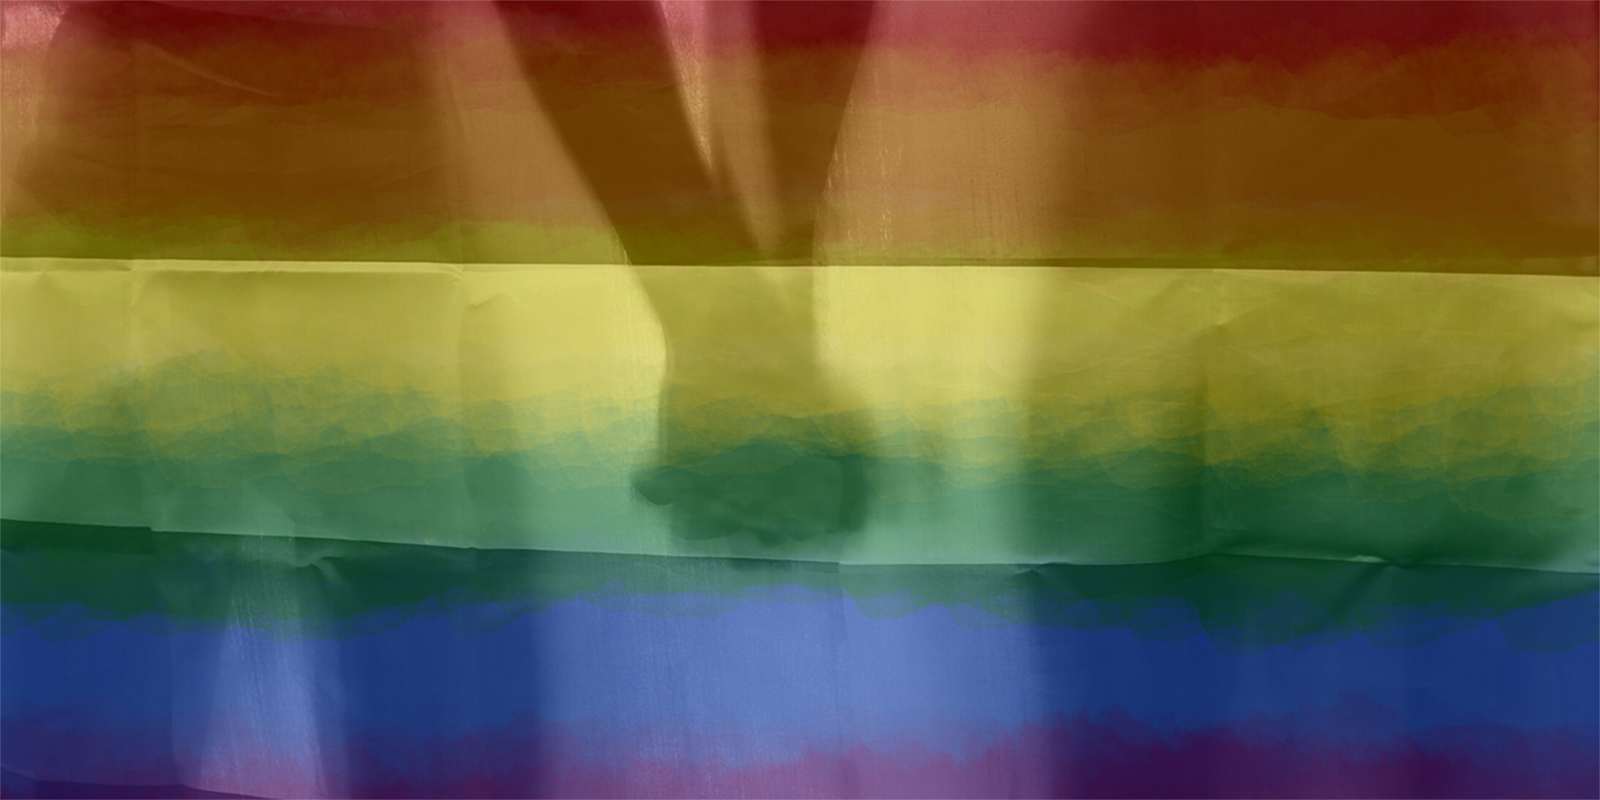 Día contra la LGBTfobia: “Nuestros cuerpos, nuestras vidas, nuestros derechos”